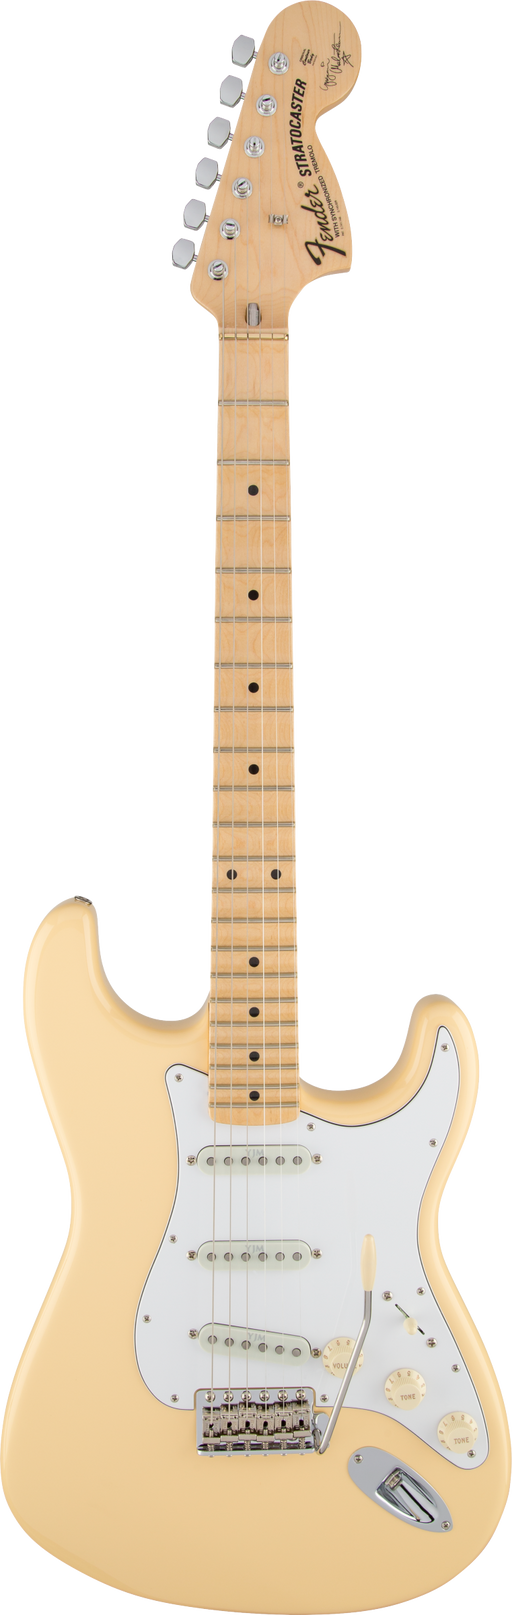 Fender Artist Series Yngwie Malmsteen Stratocaster Scalloped Maple Vintage White